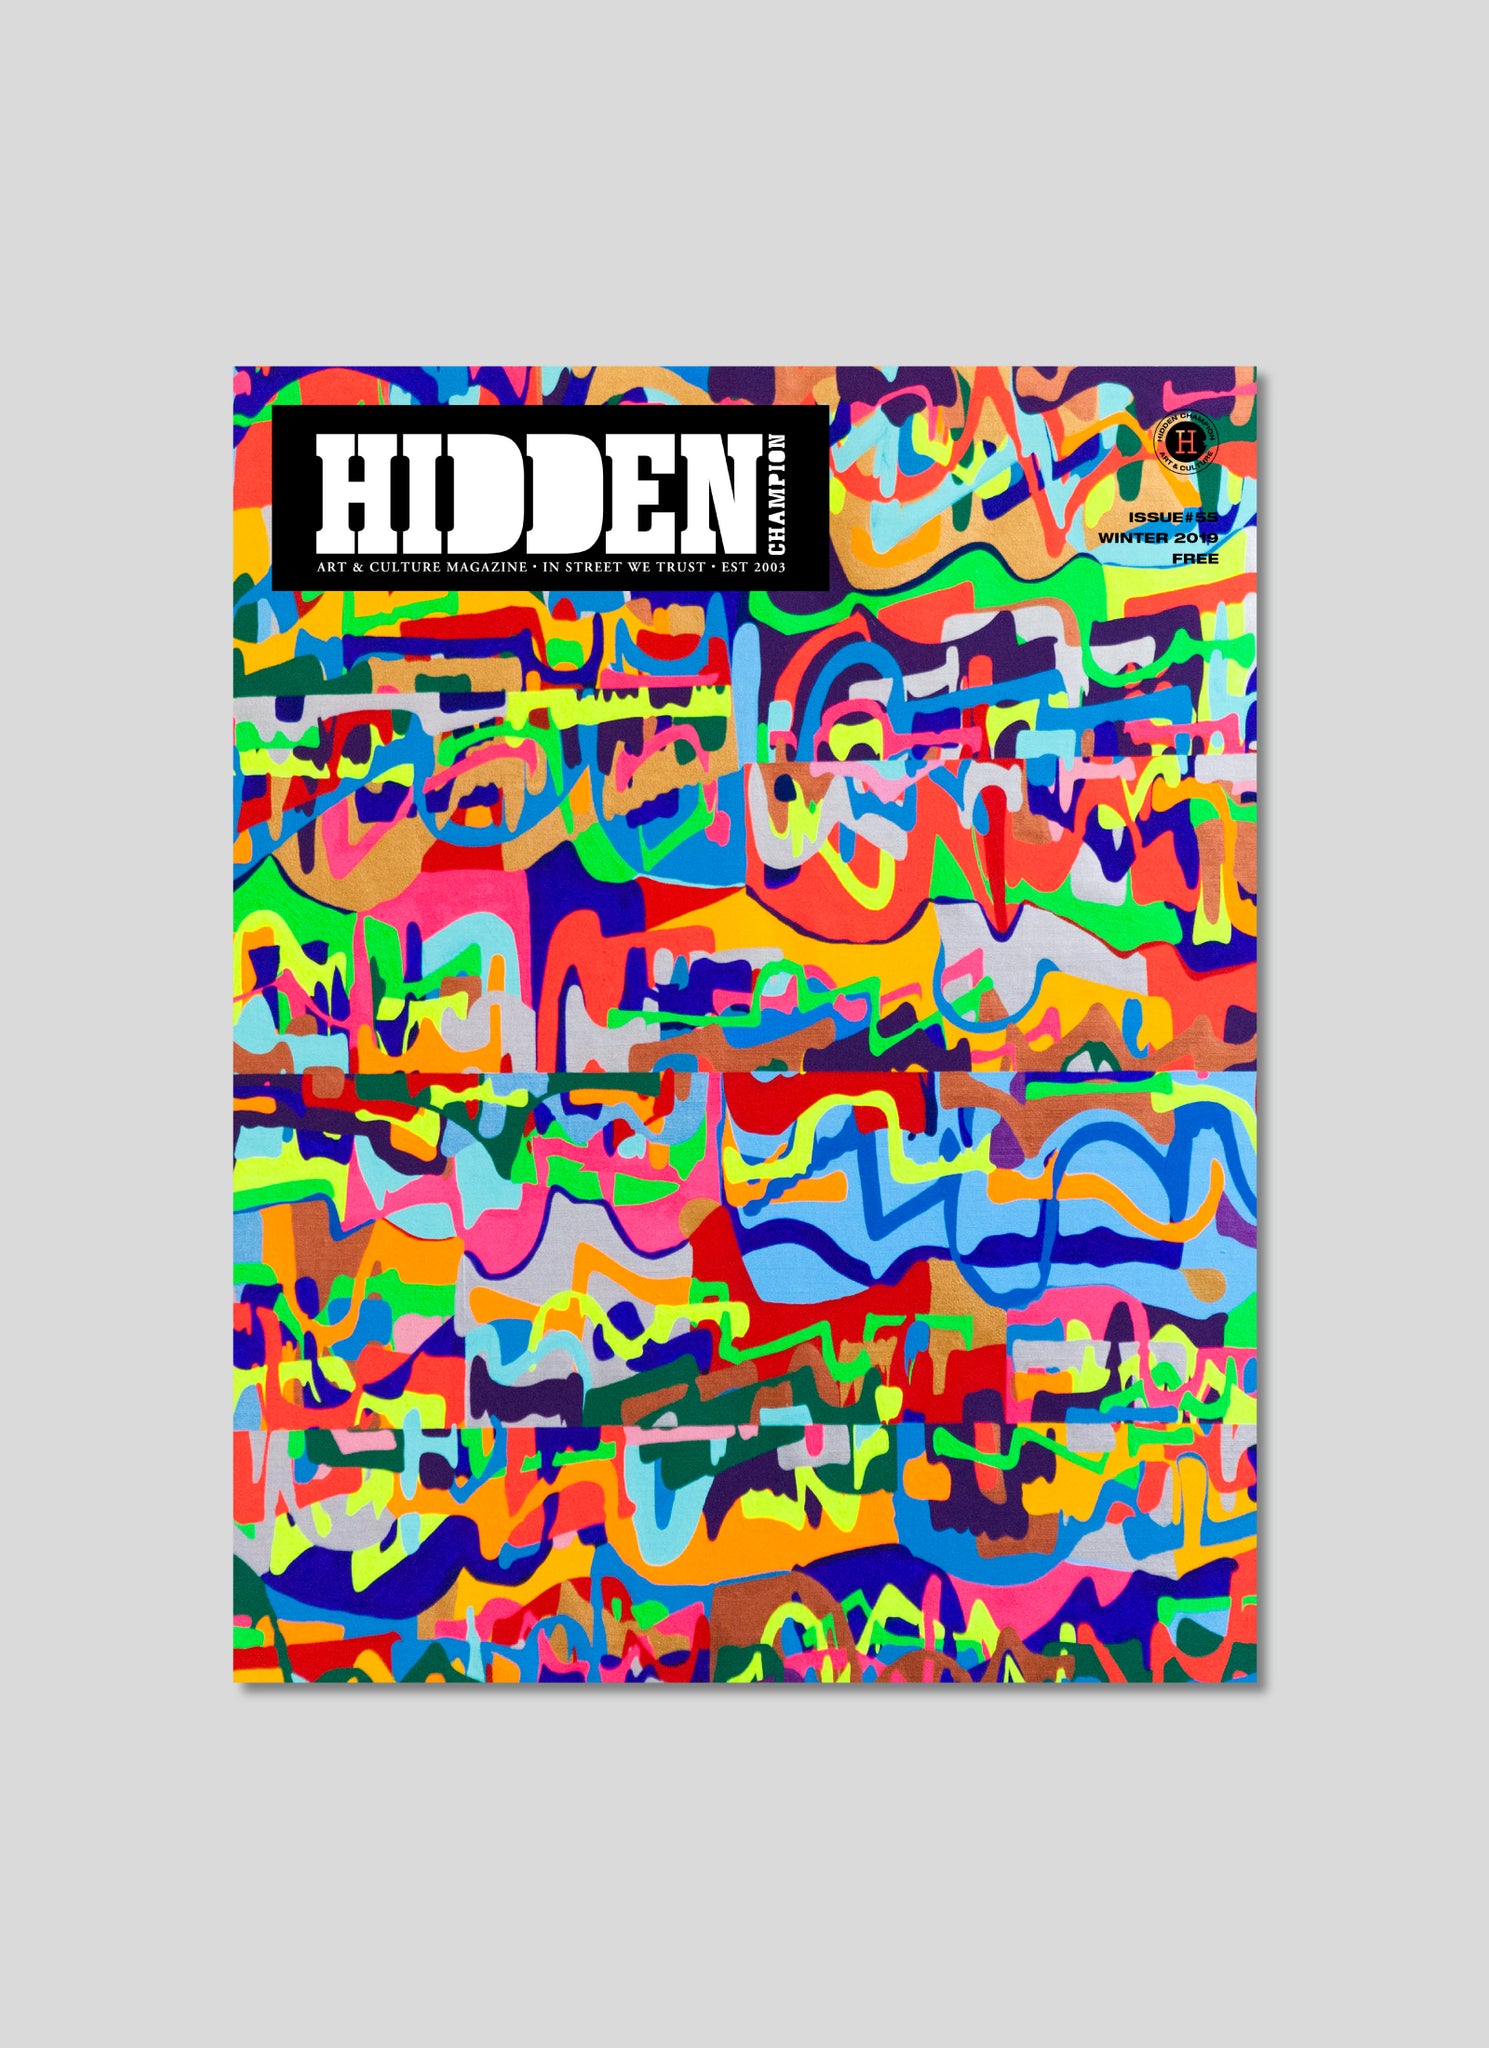 HIDDEN CHAMPION Issue#55